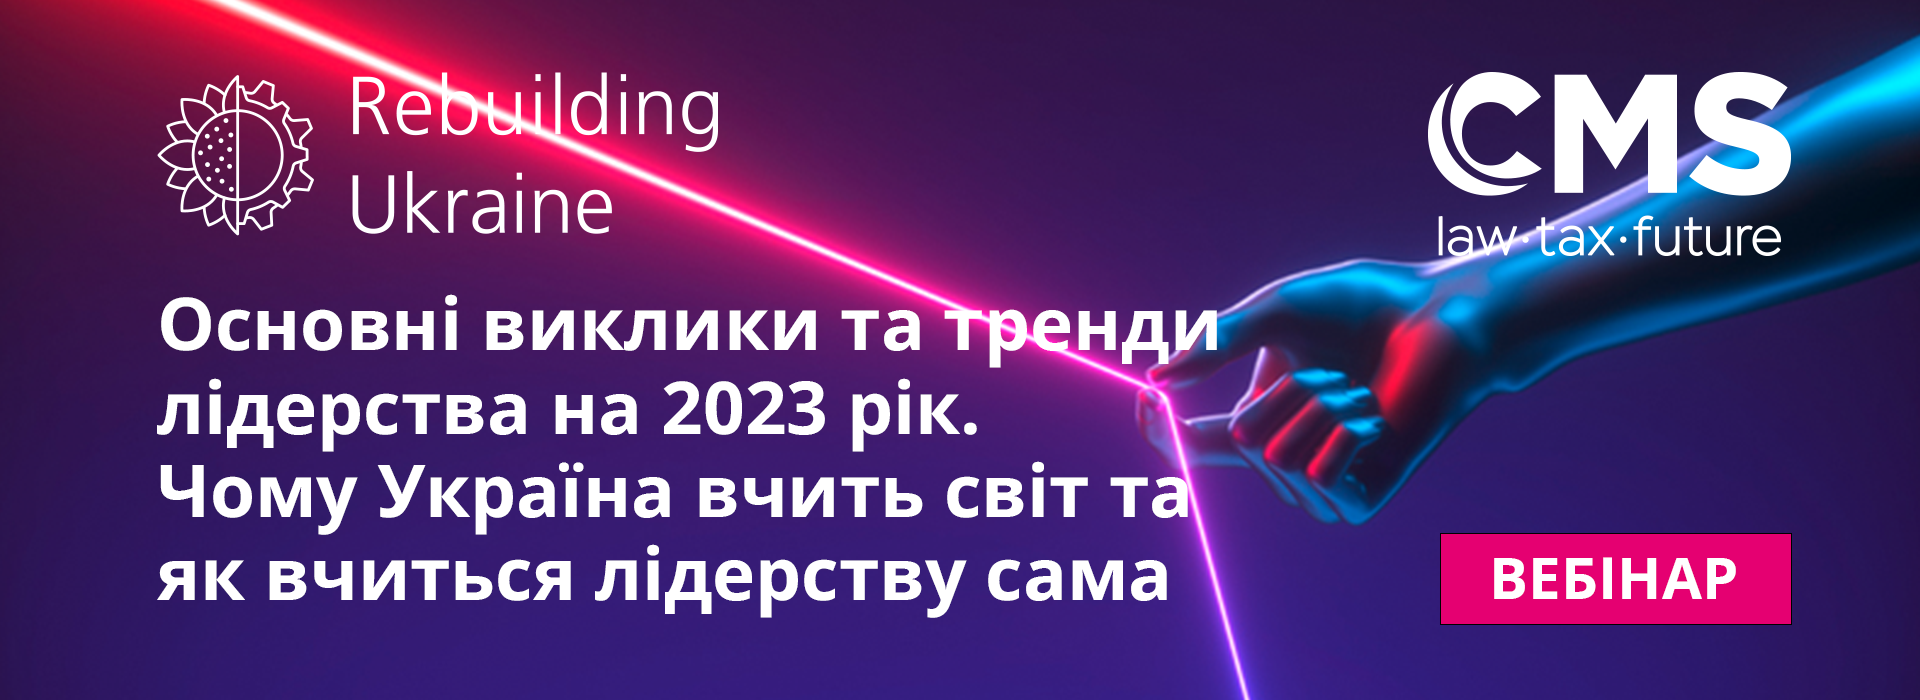 Подія «Основні виклики та тренди лідерства на 2023 рік. Чому Україна вчить світ та як вчиться лідерству сама»